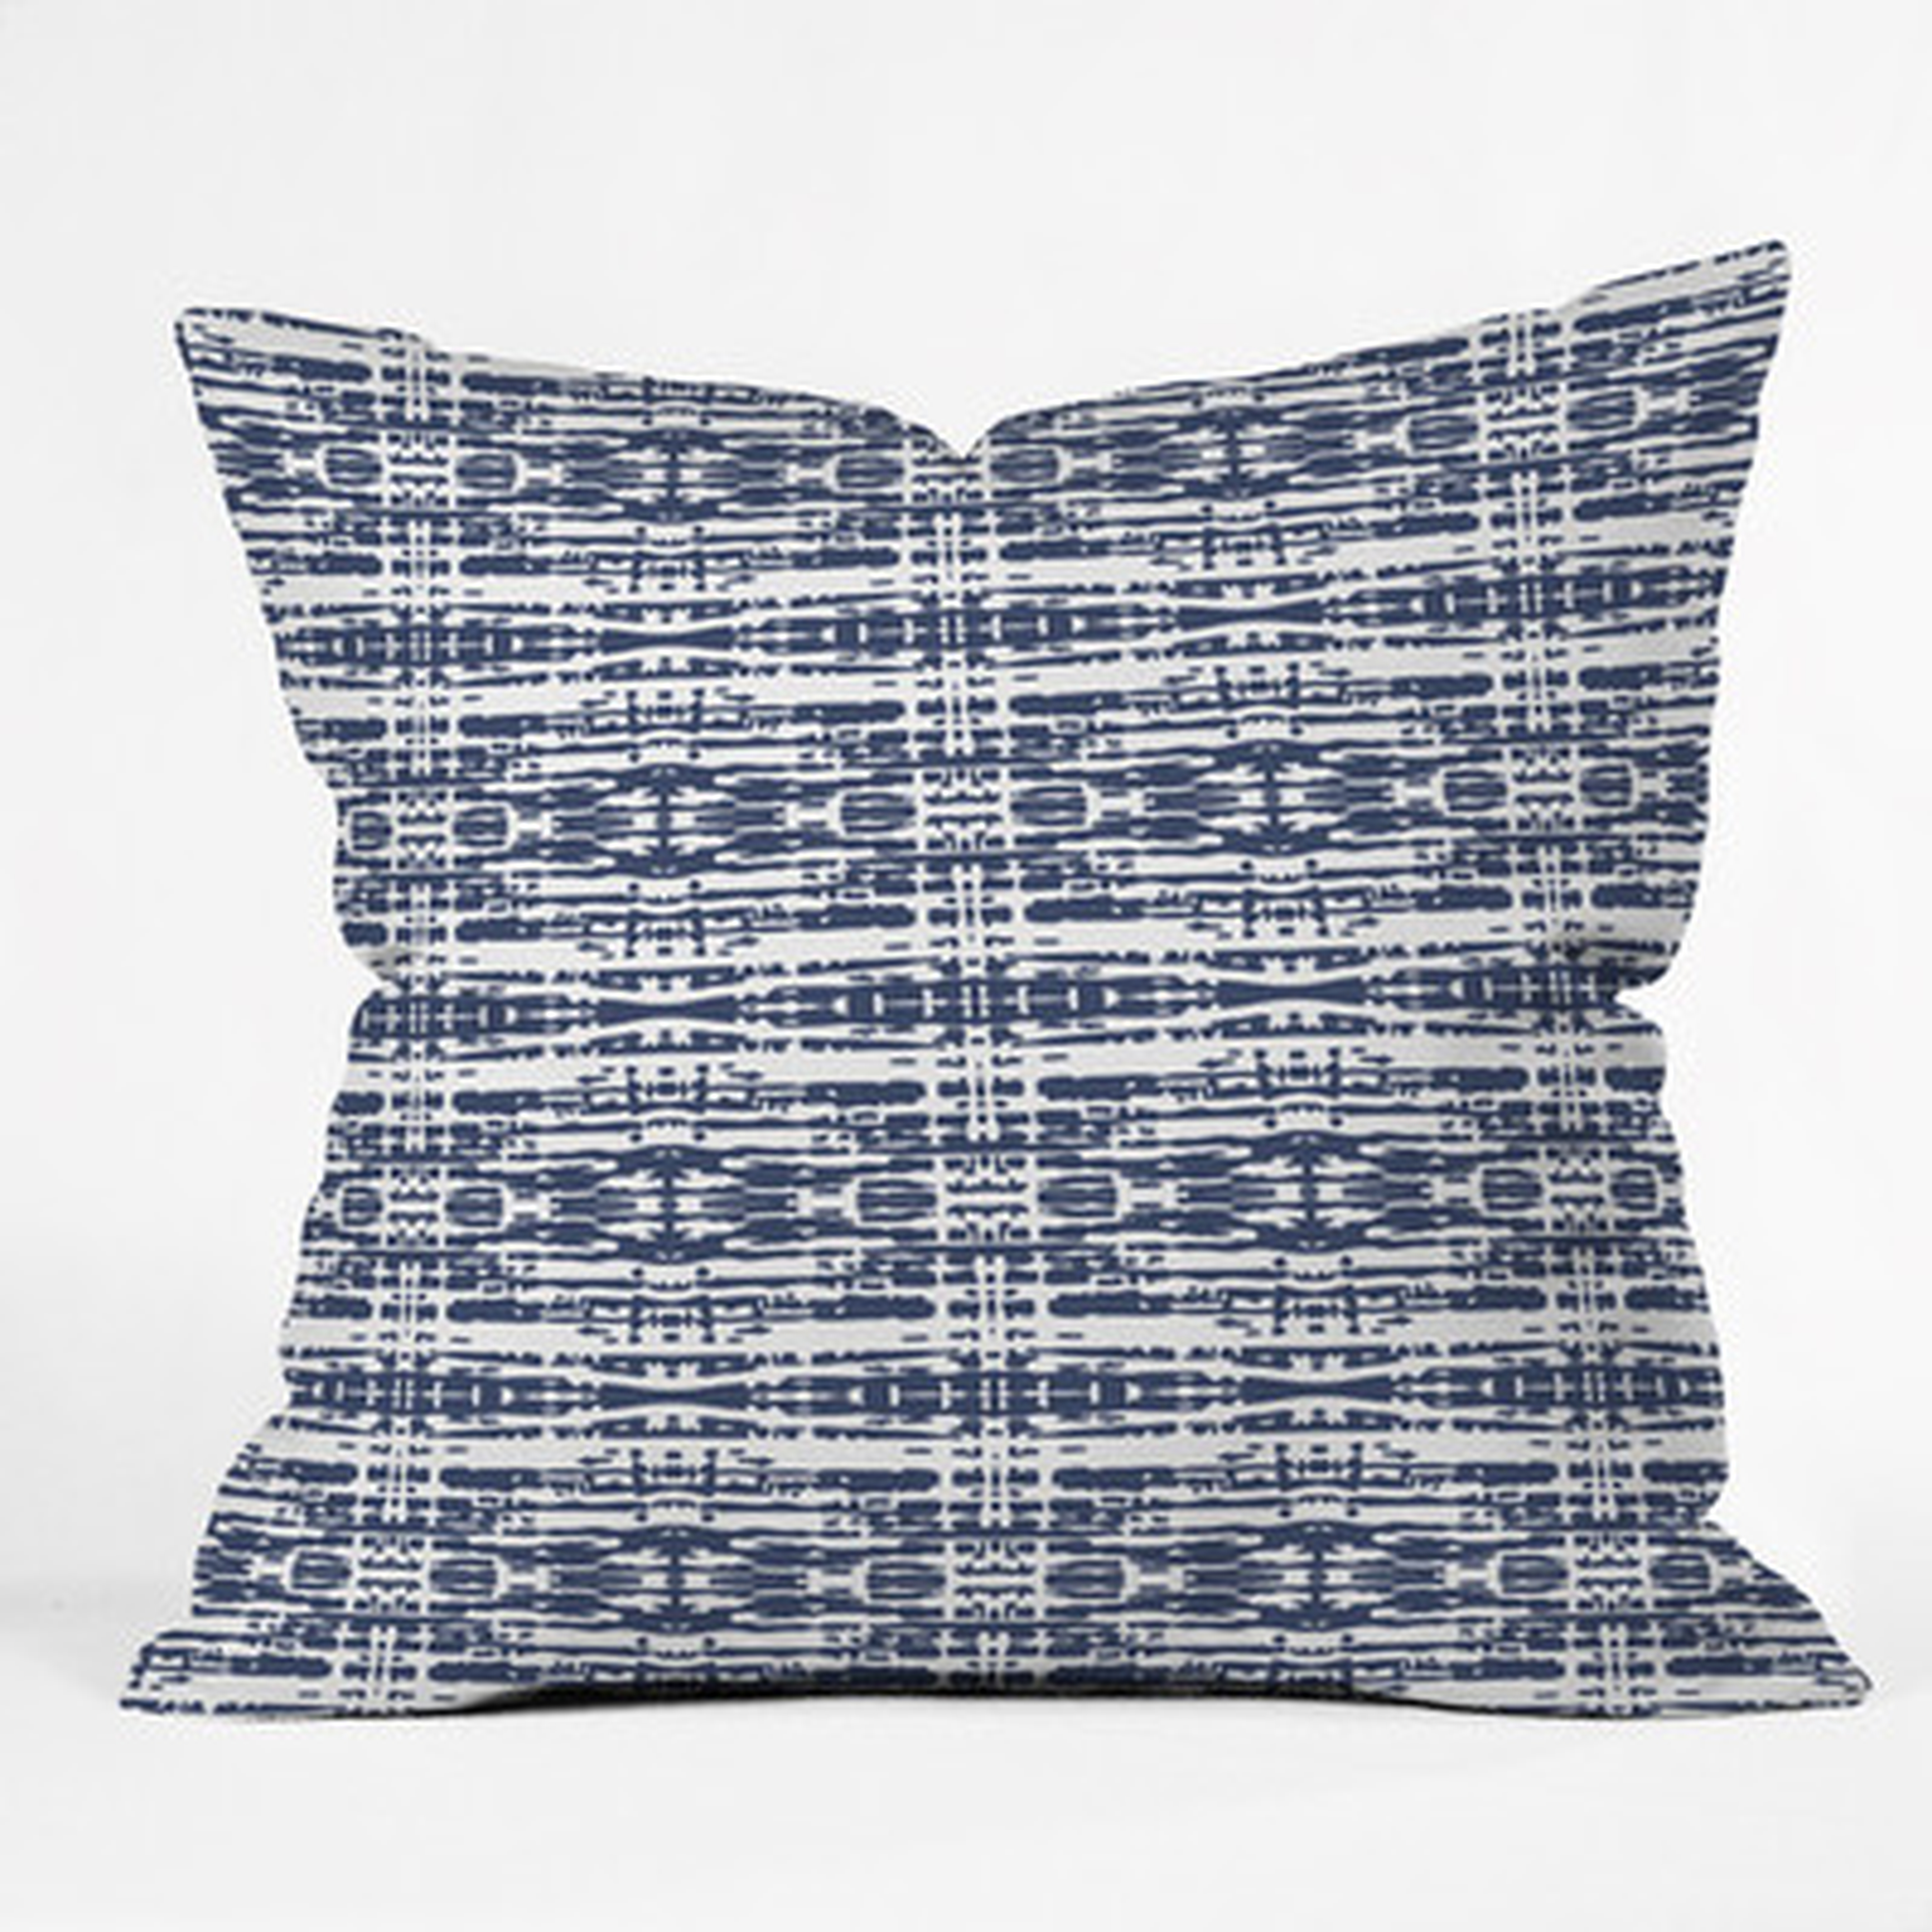 Flemings Woven Outdoor Throw Pillow, Blue, 16" x 16" - Wayfair